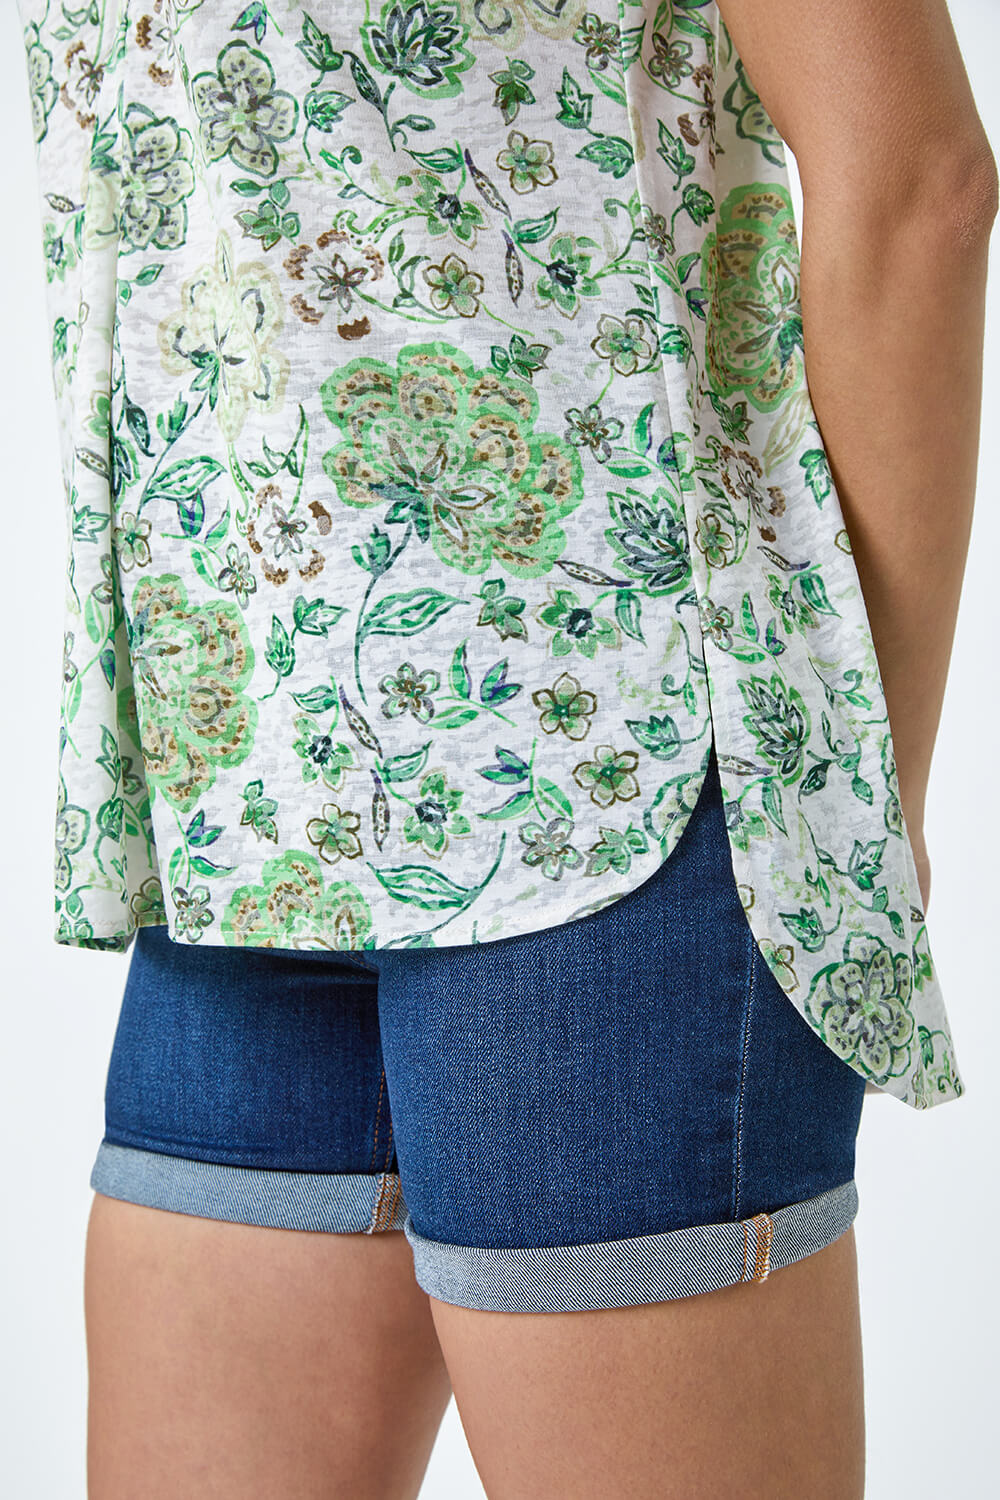 Green Floral Burnout Print V-Neck Vest Top, Image 5 of 5